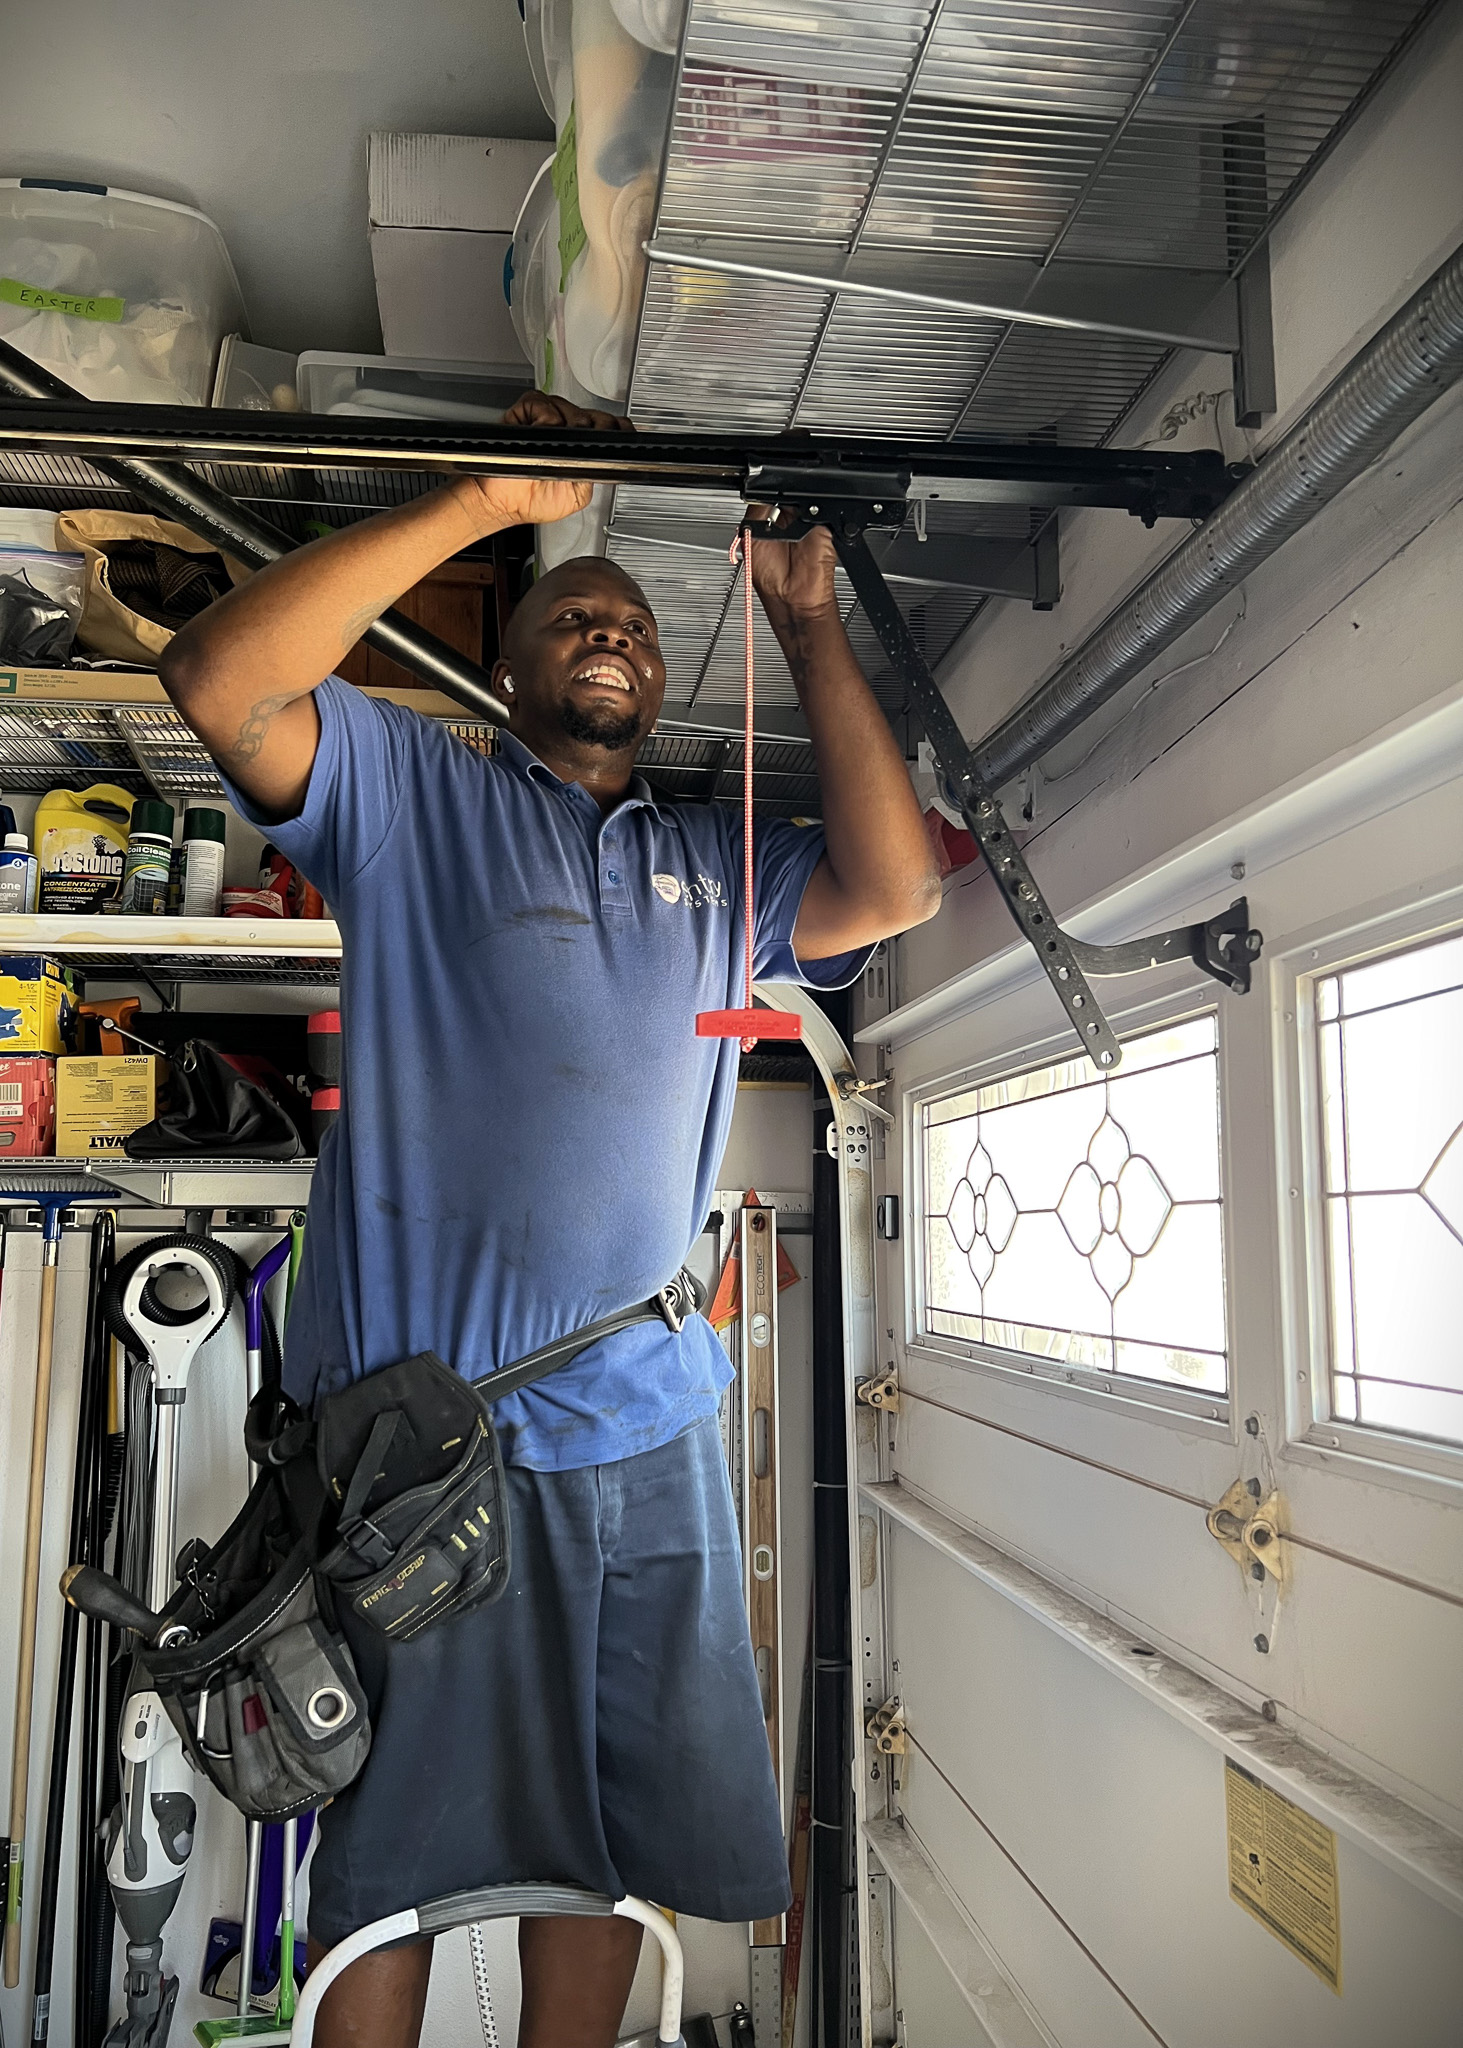 Image of garage door repair technician fixing the trolley on the rail of a garage door opener.